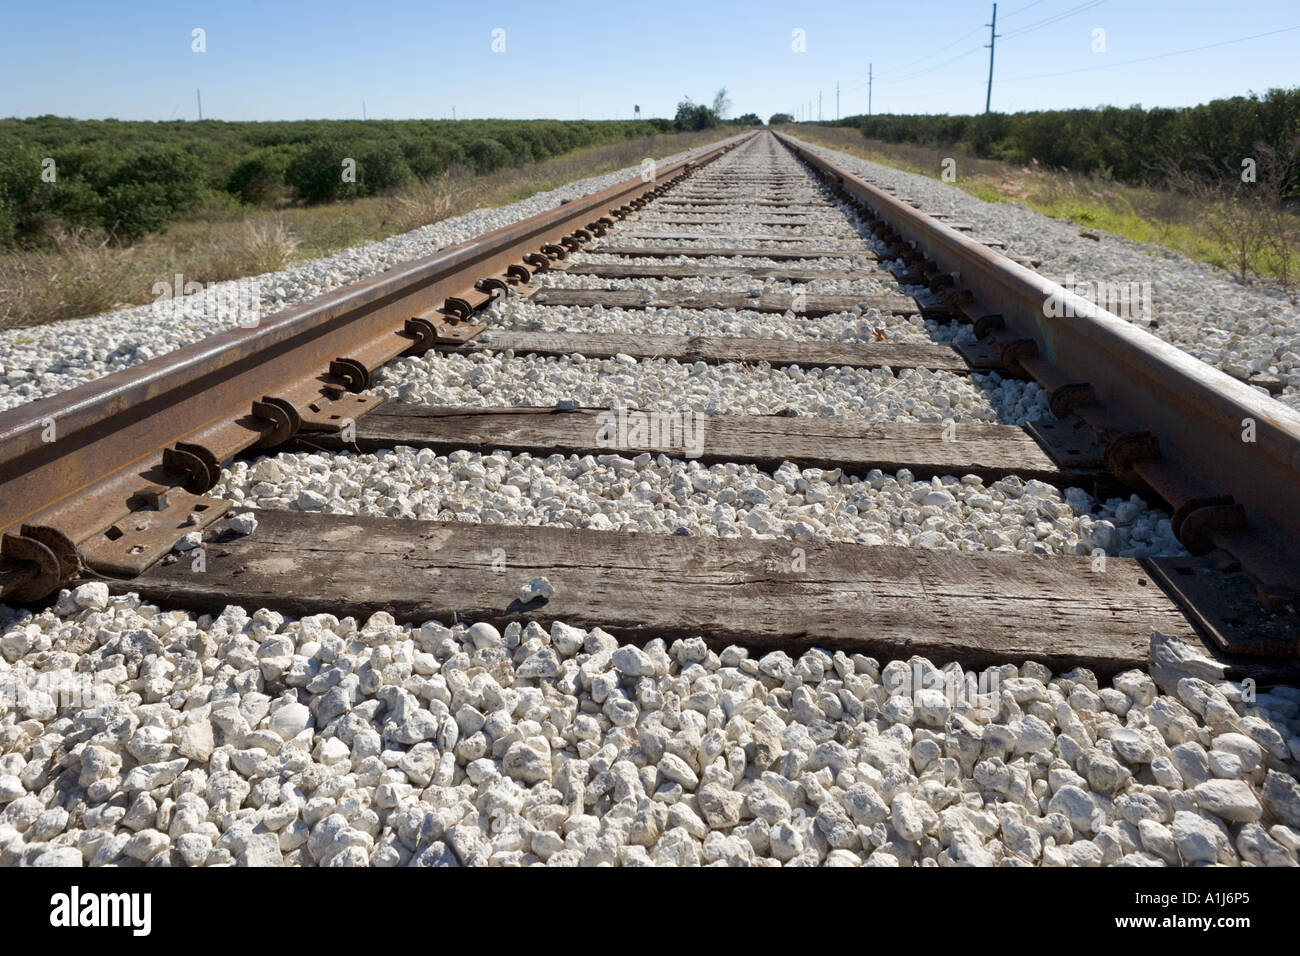 Des voies de chemin de fer, Florida, USA Banque D'Images